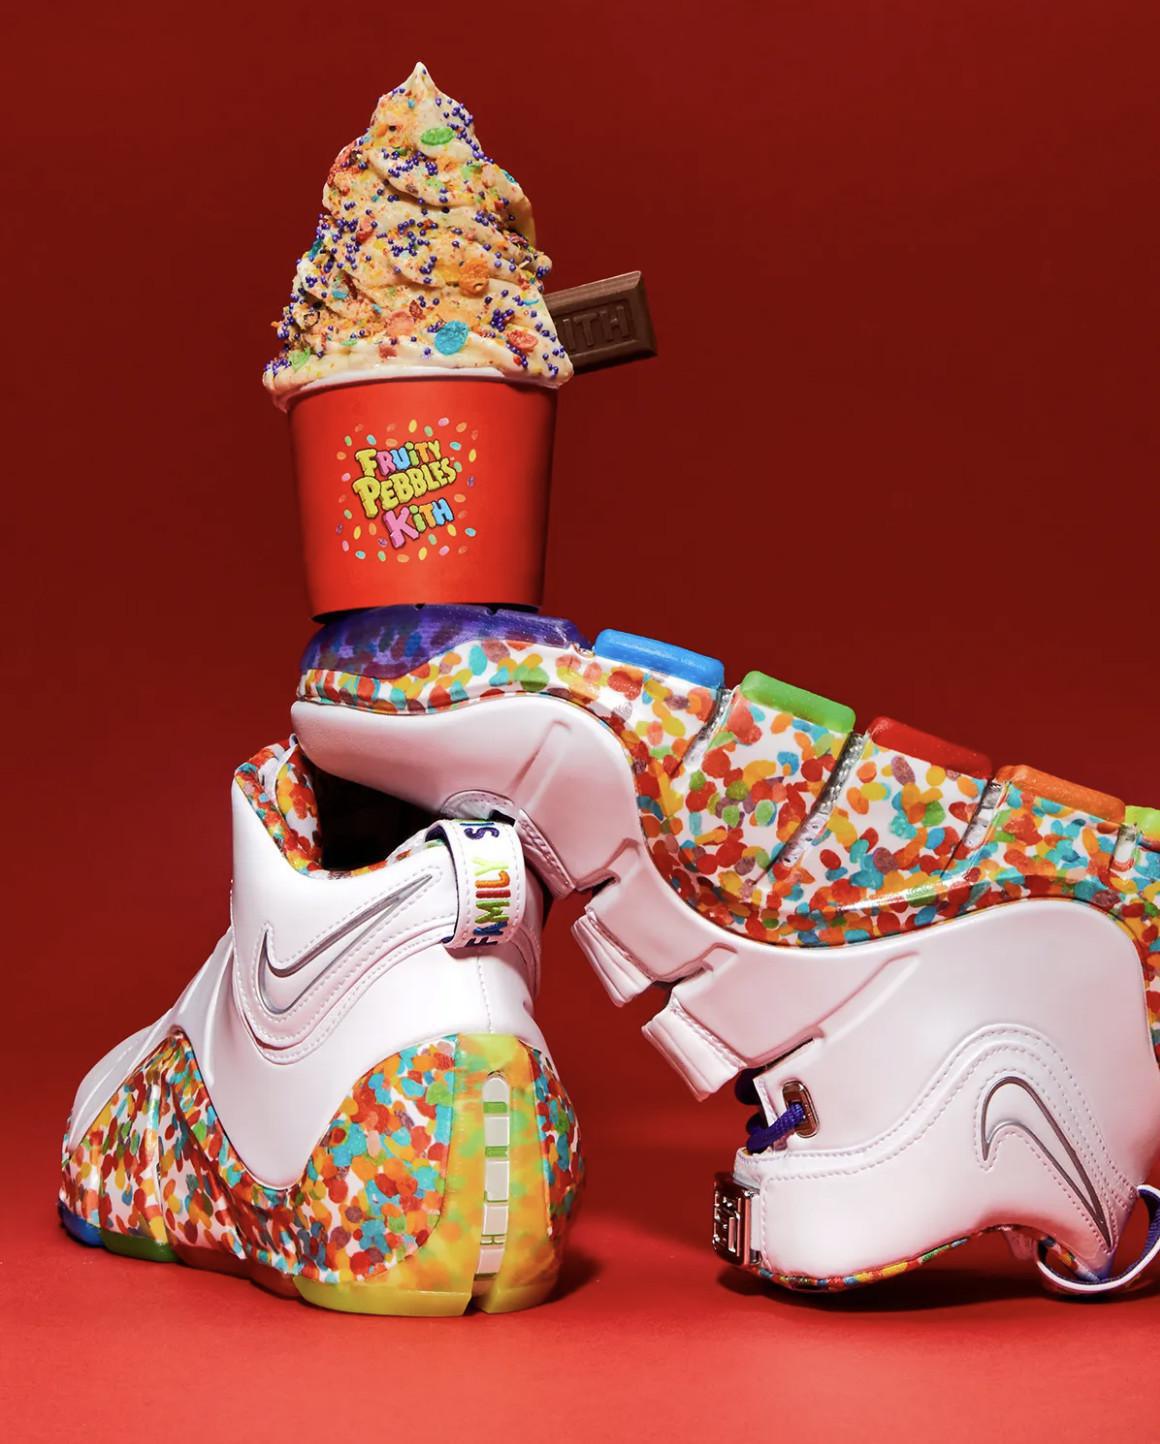 Kith célèbre la journée nationale des céréales avec une capsule limitée de Fruity Pebbles et une sortie anticipée de chaussures